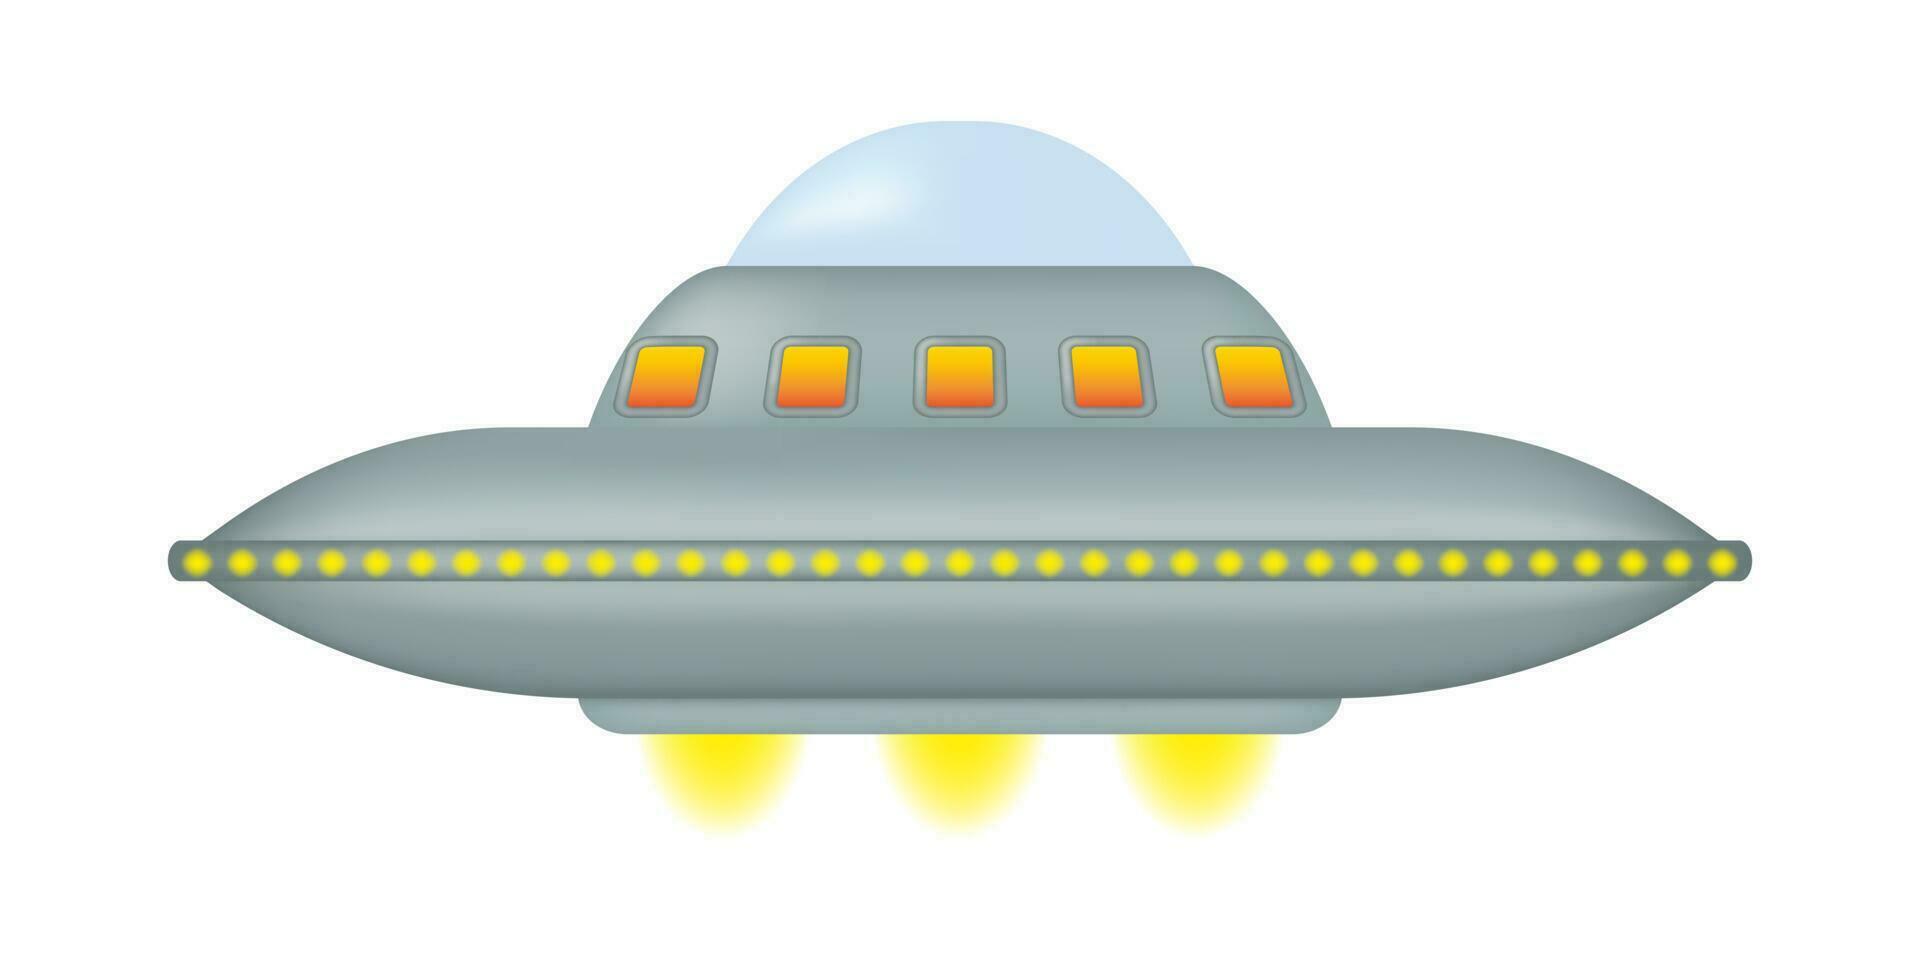 ett isolerat flygande fat med en serier av gul lampor omgivande dess runda metall kropp. fantastisk utomjording rymdskepp. UFO dag. vektor illustration.